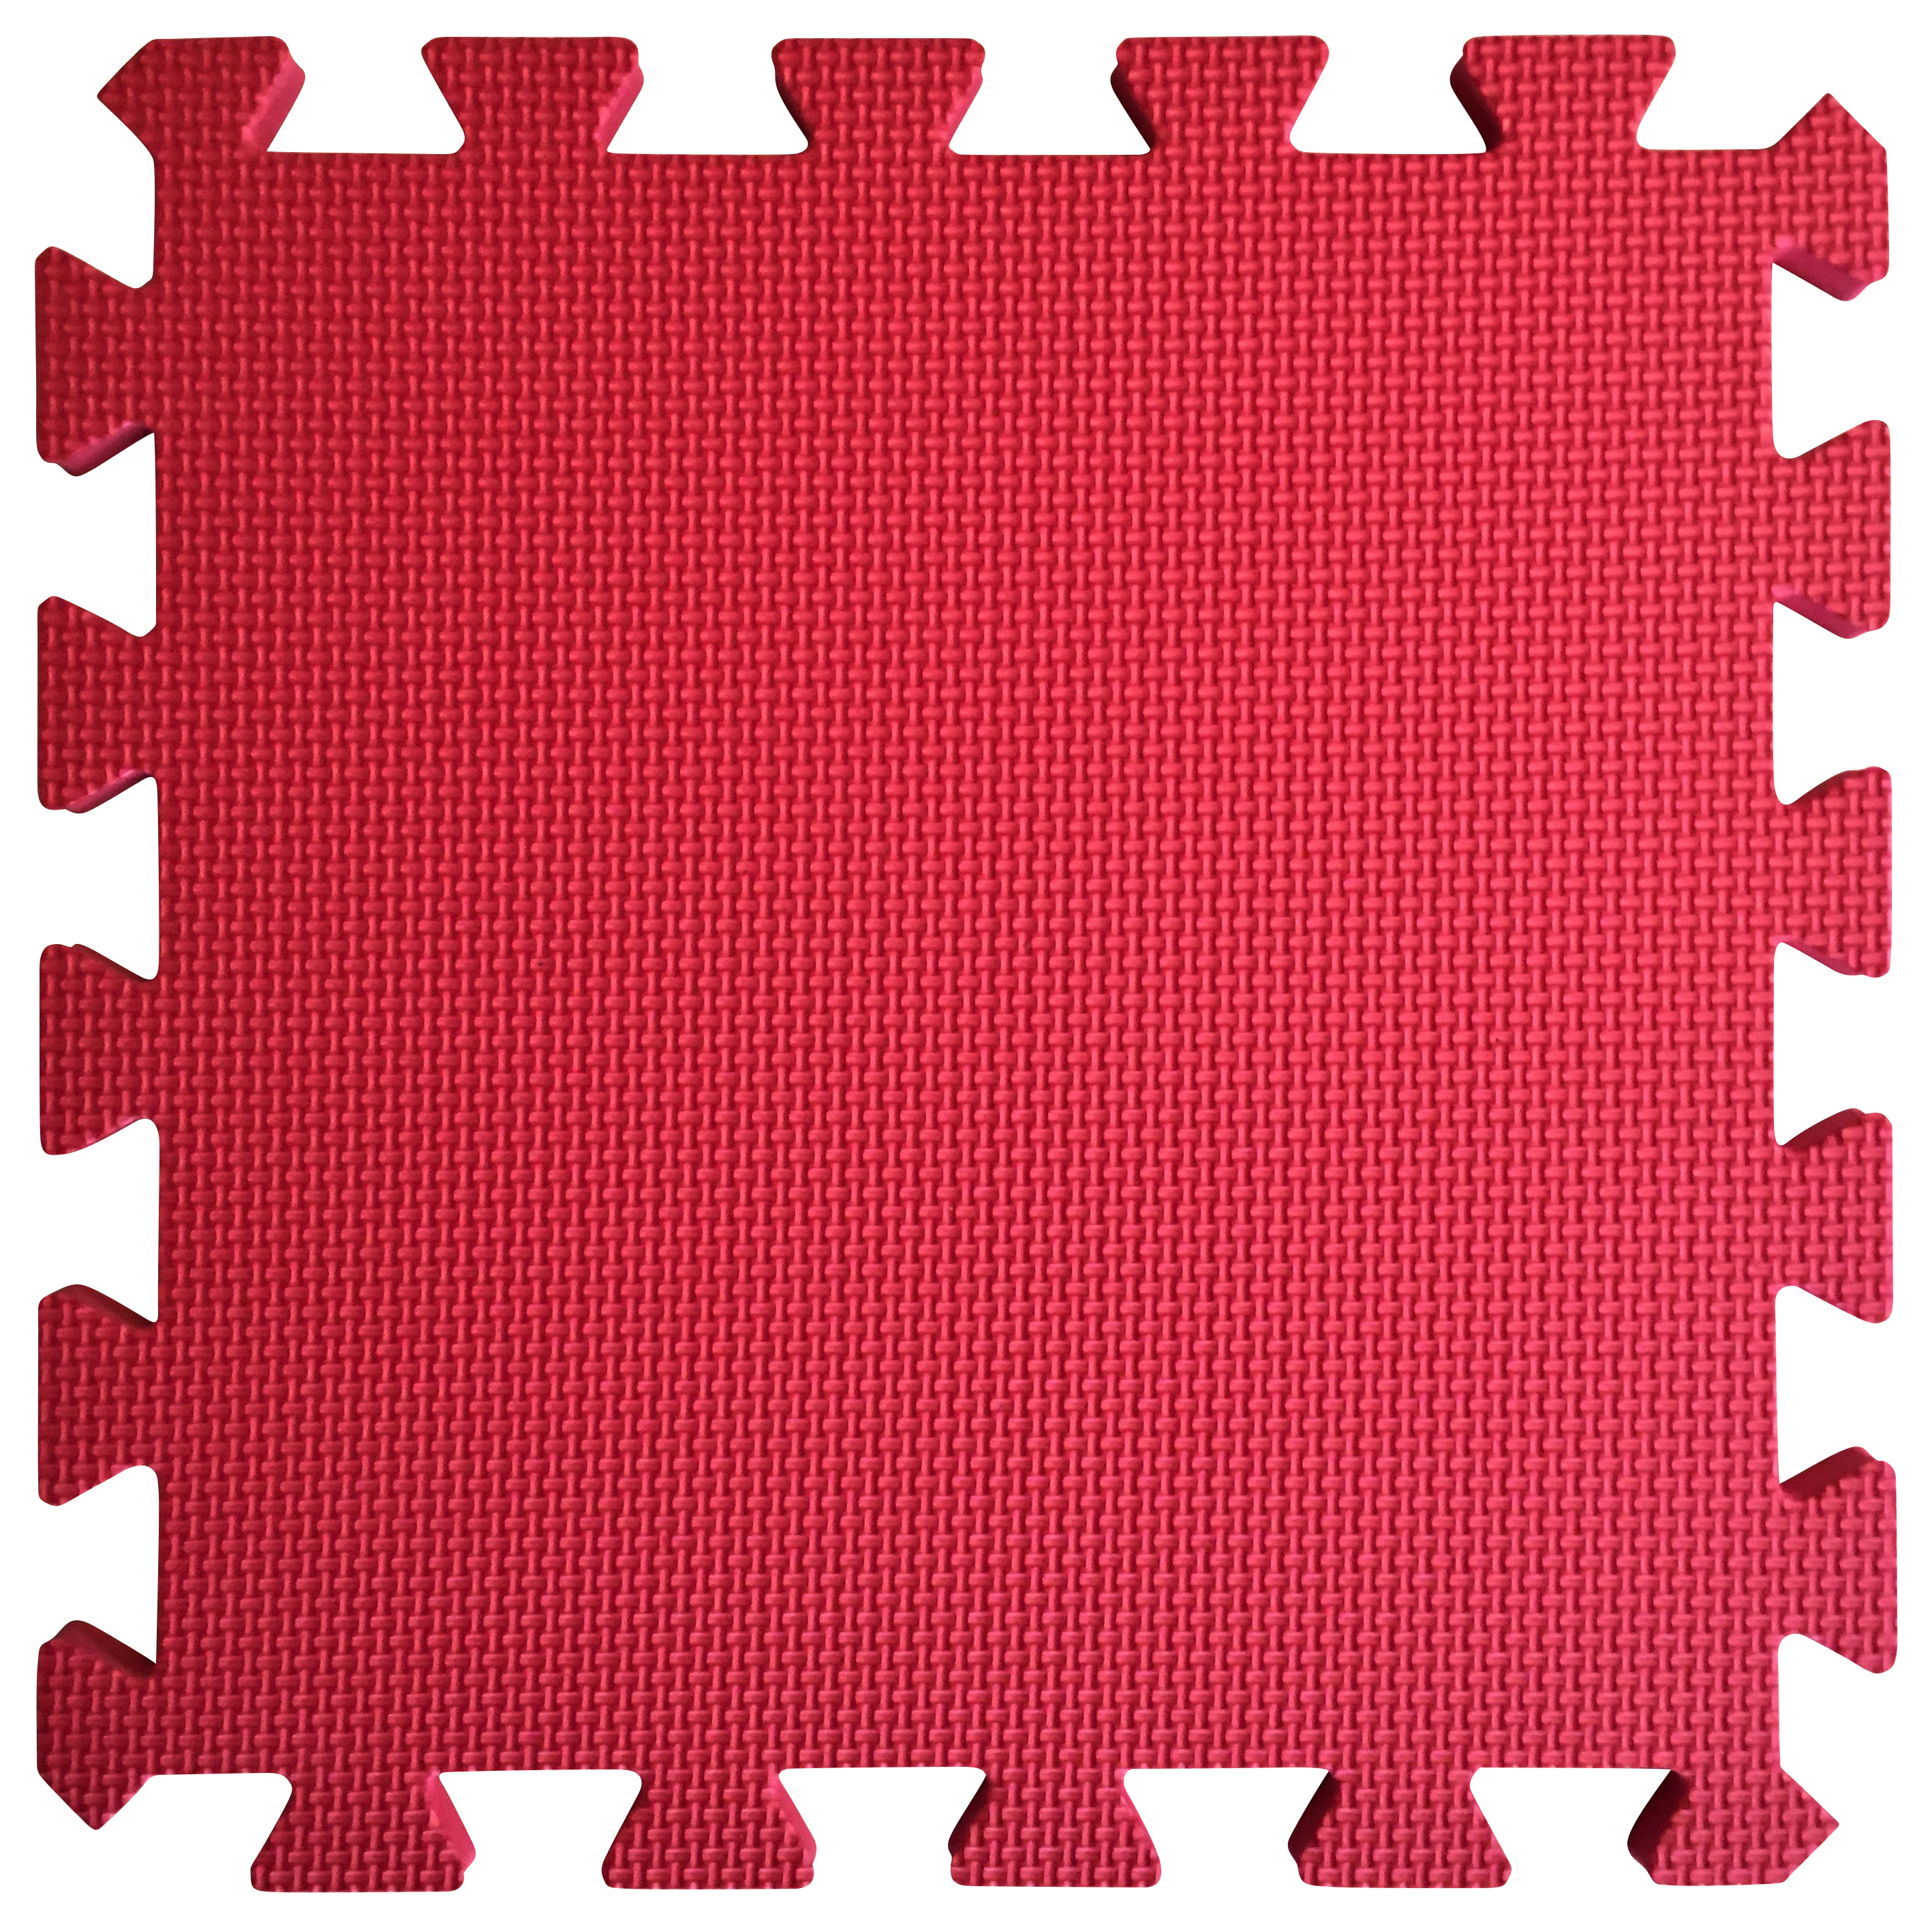 Image of Warm Floor Red Interlocking Floor Tiles for Garden Buildings - 3 x 4ft